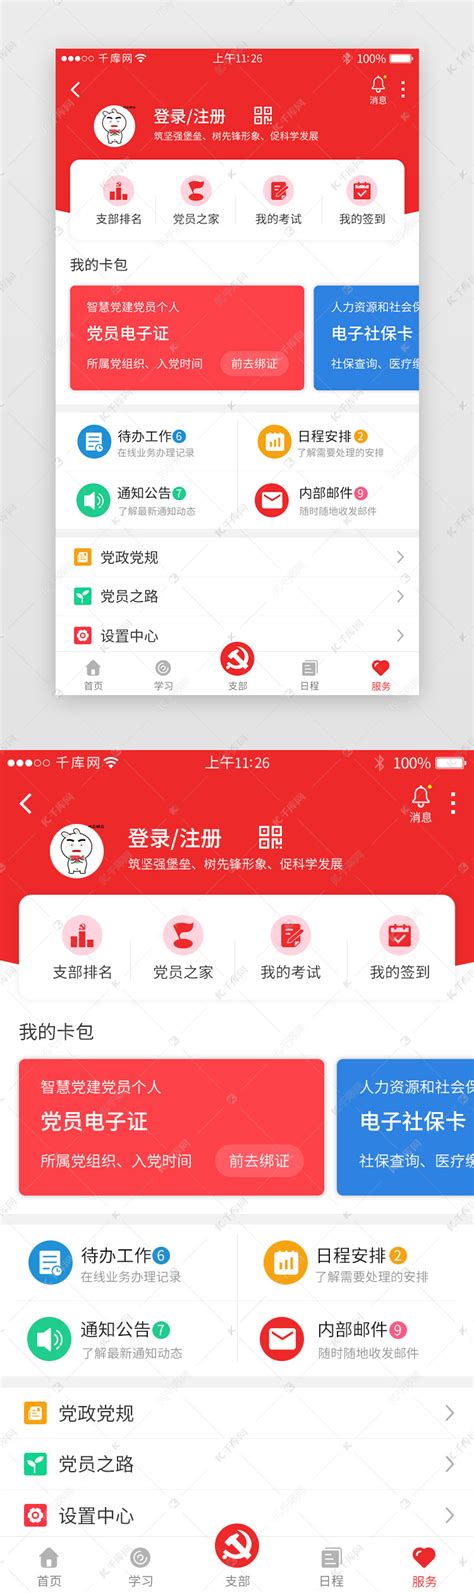 红色系党建app套图ui界面设计素材-千库网